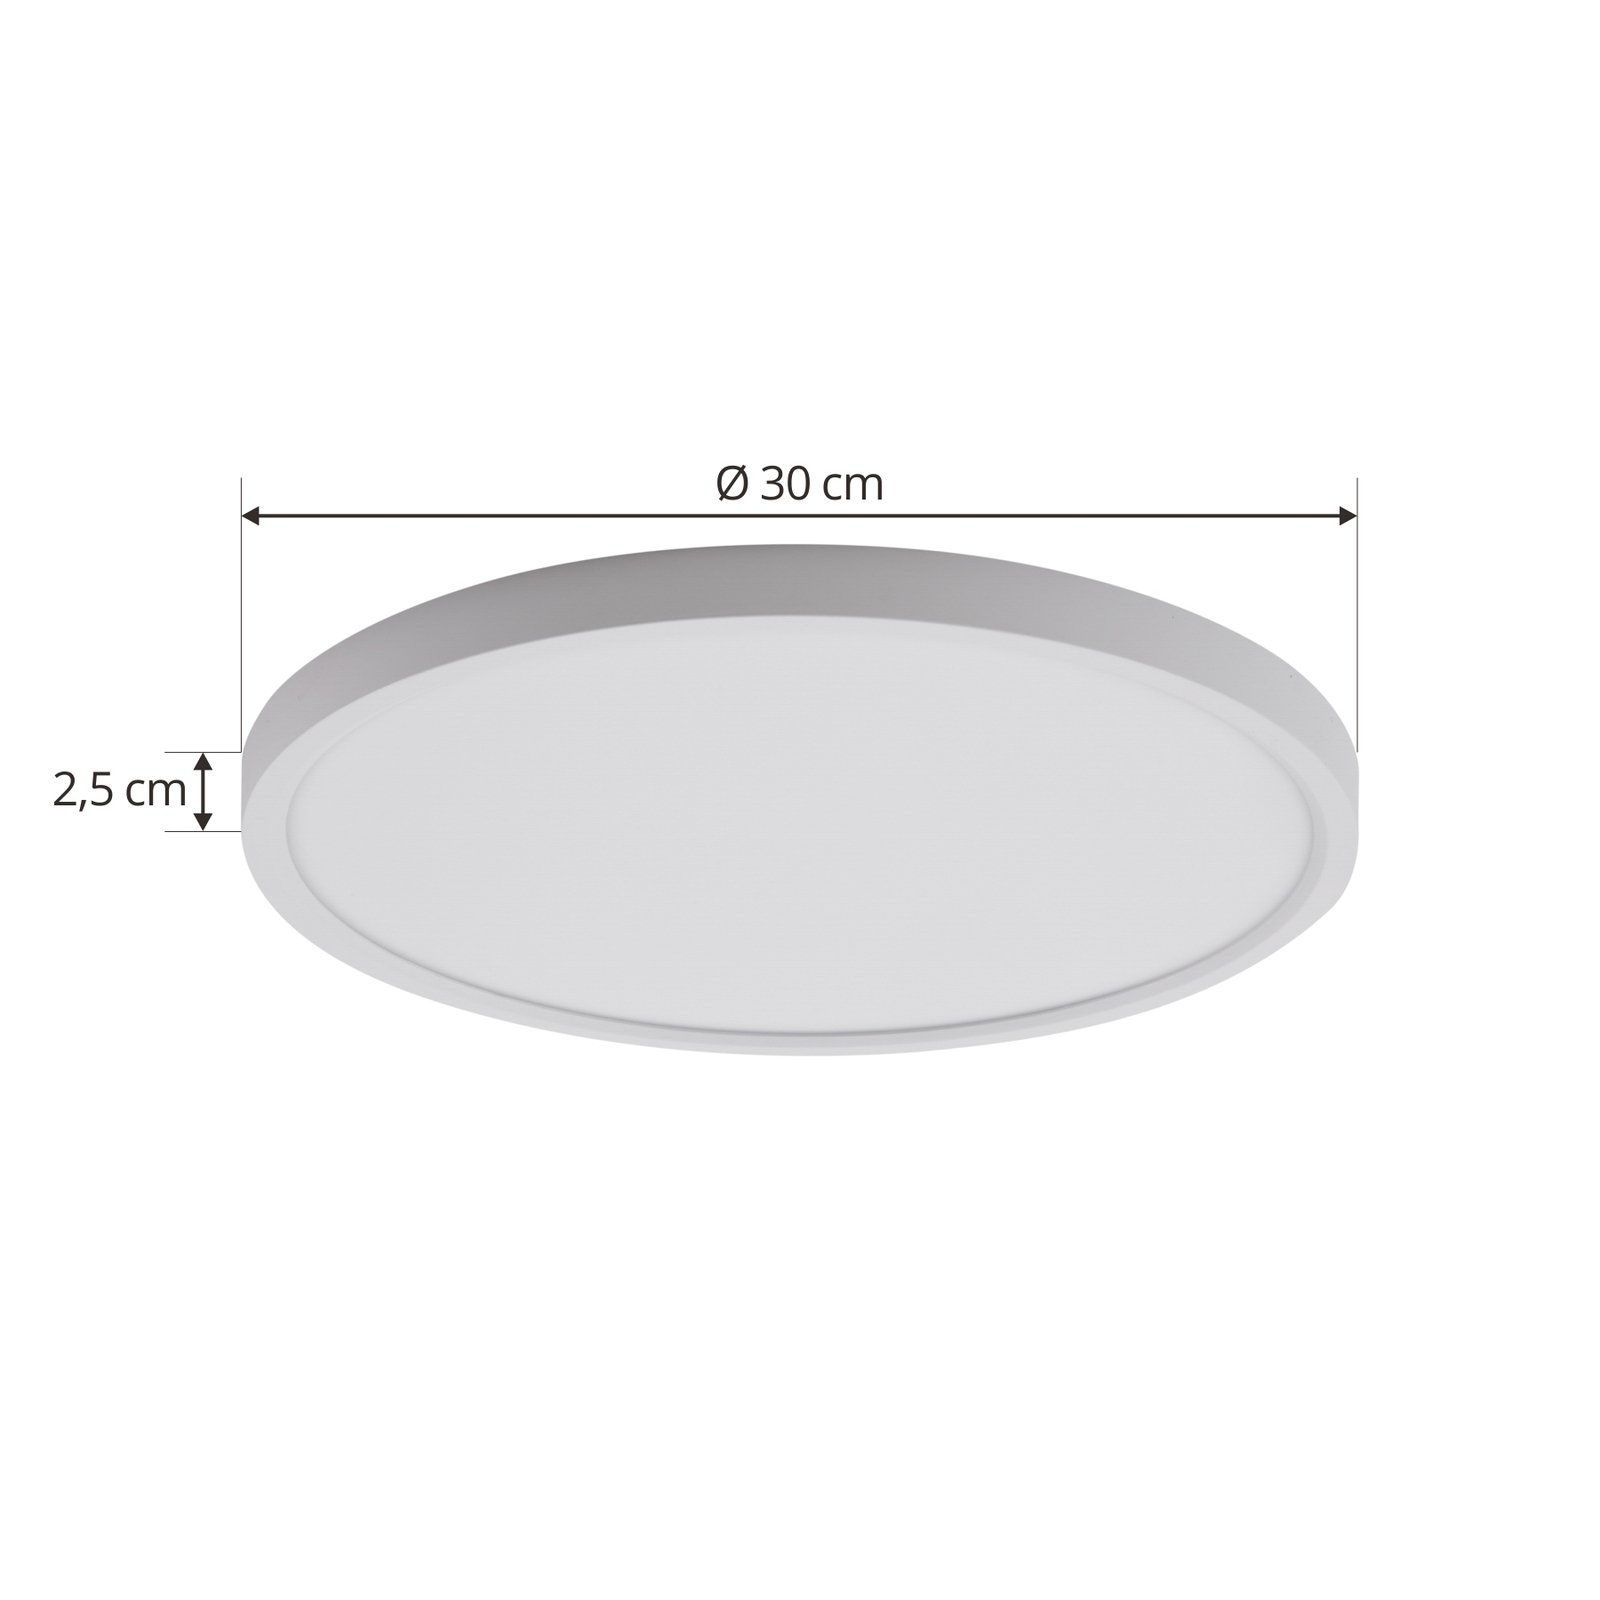 Lindby LED stropní svítidlo Deika, 30 cm, bílé, plast, CCT